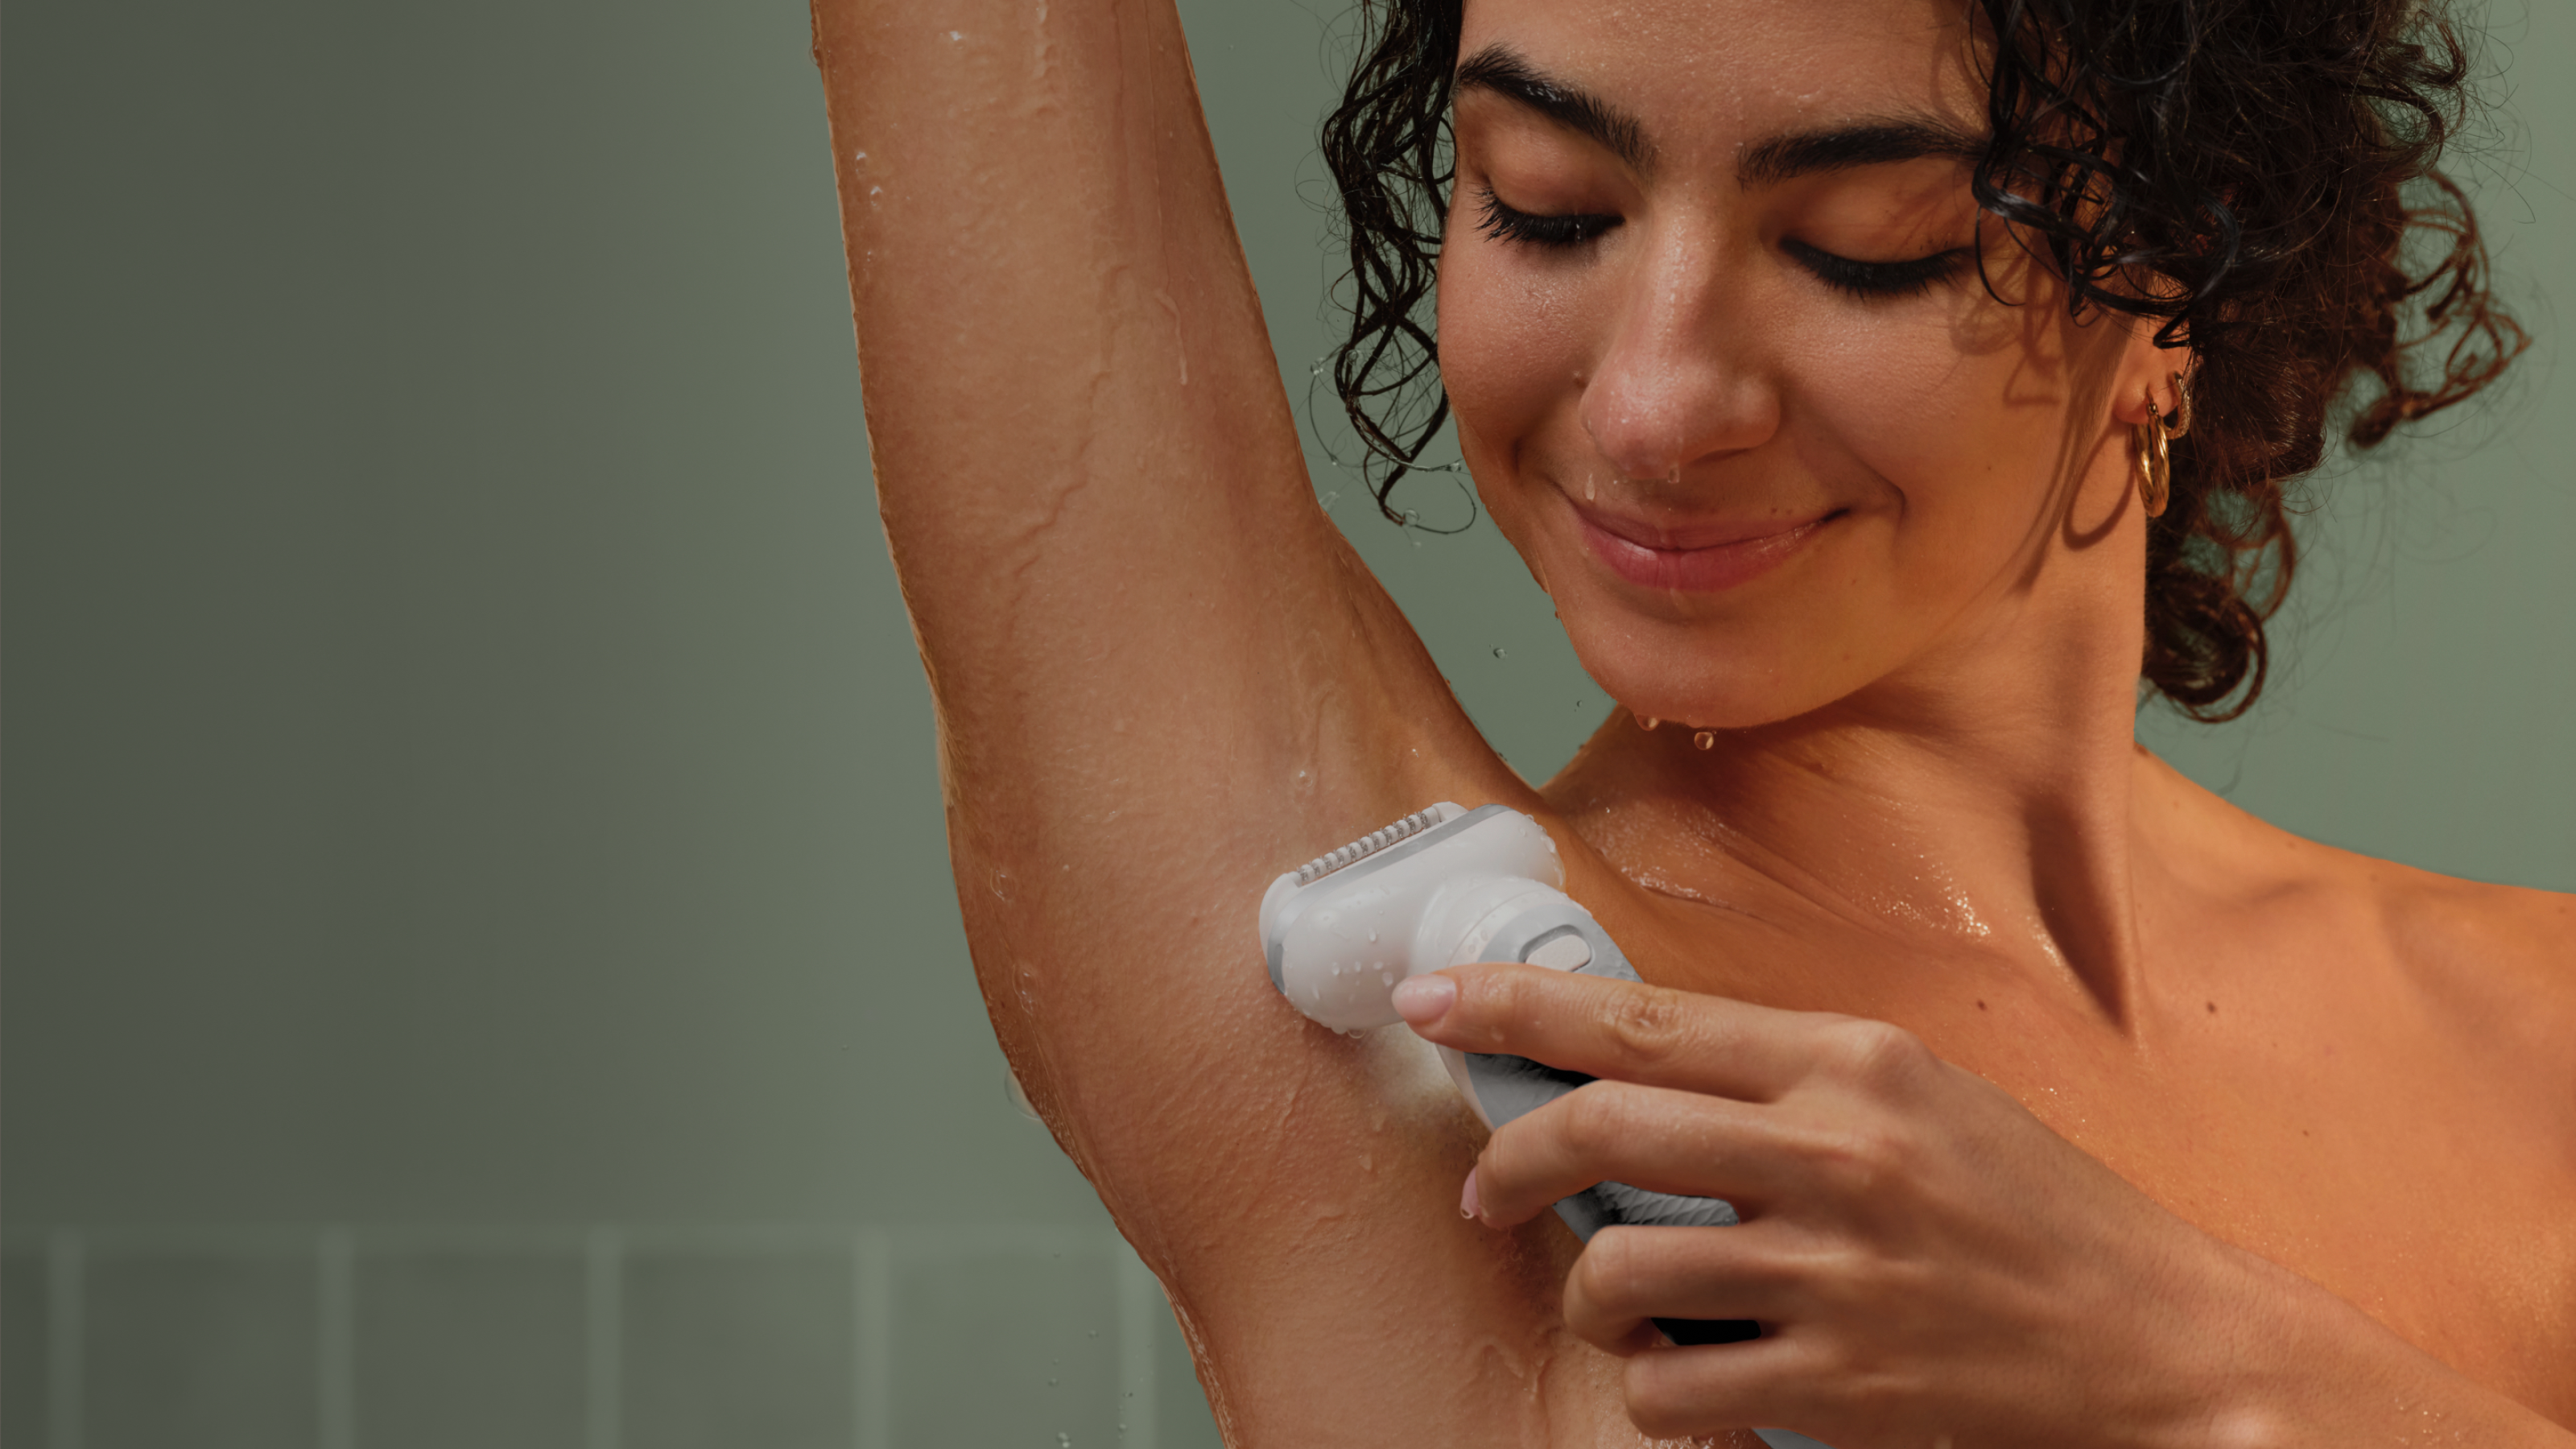 Mulher a utilizar a depiladora na axila com água a escorrer pelo braço.